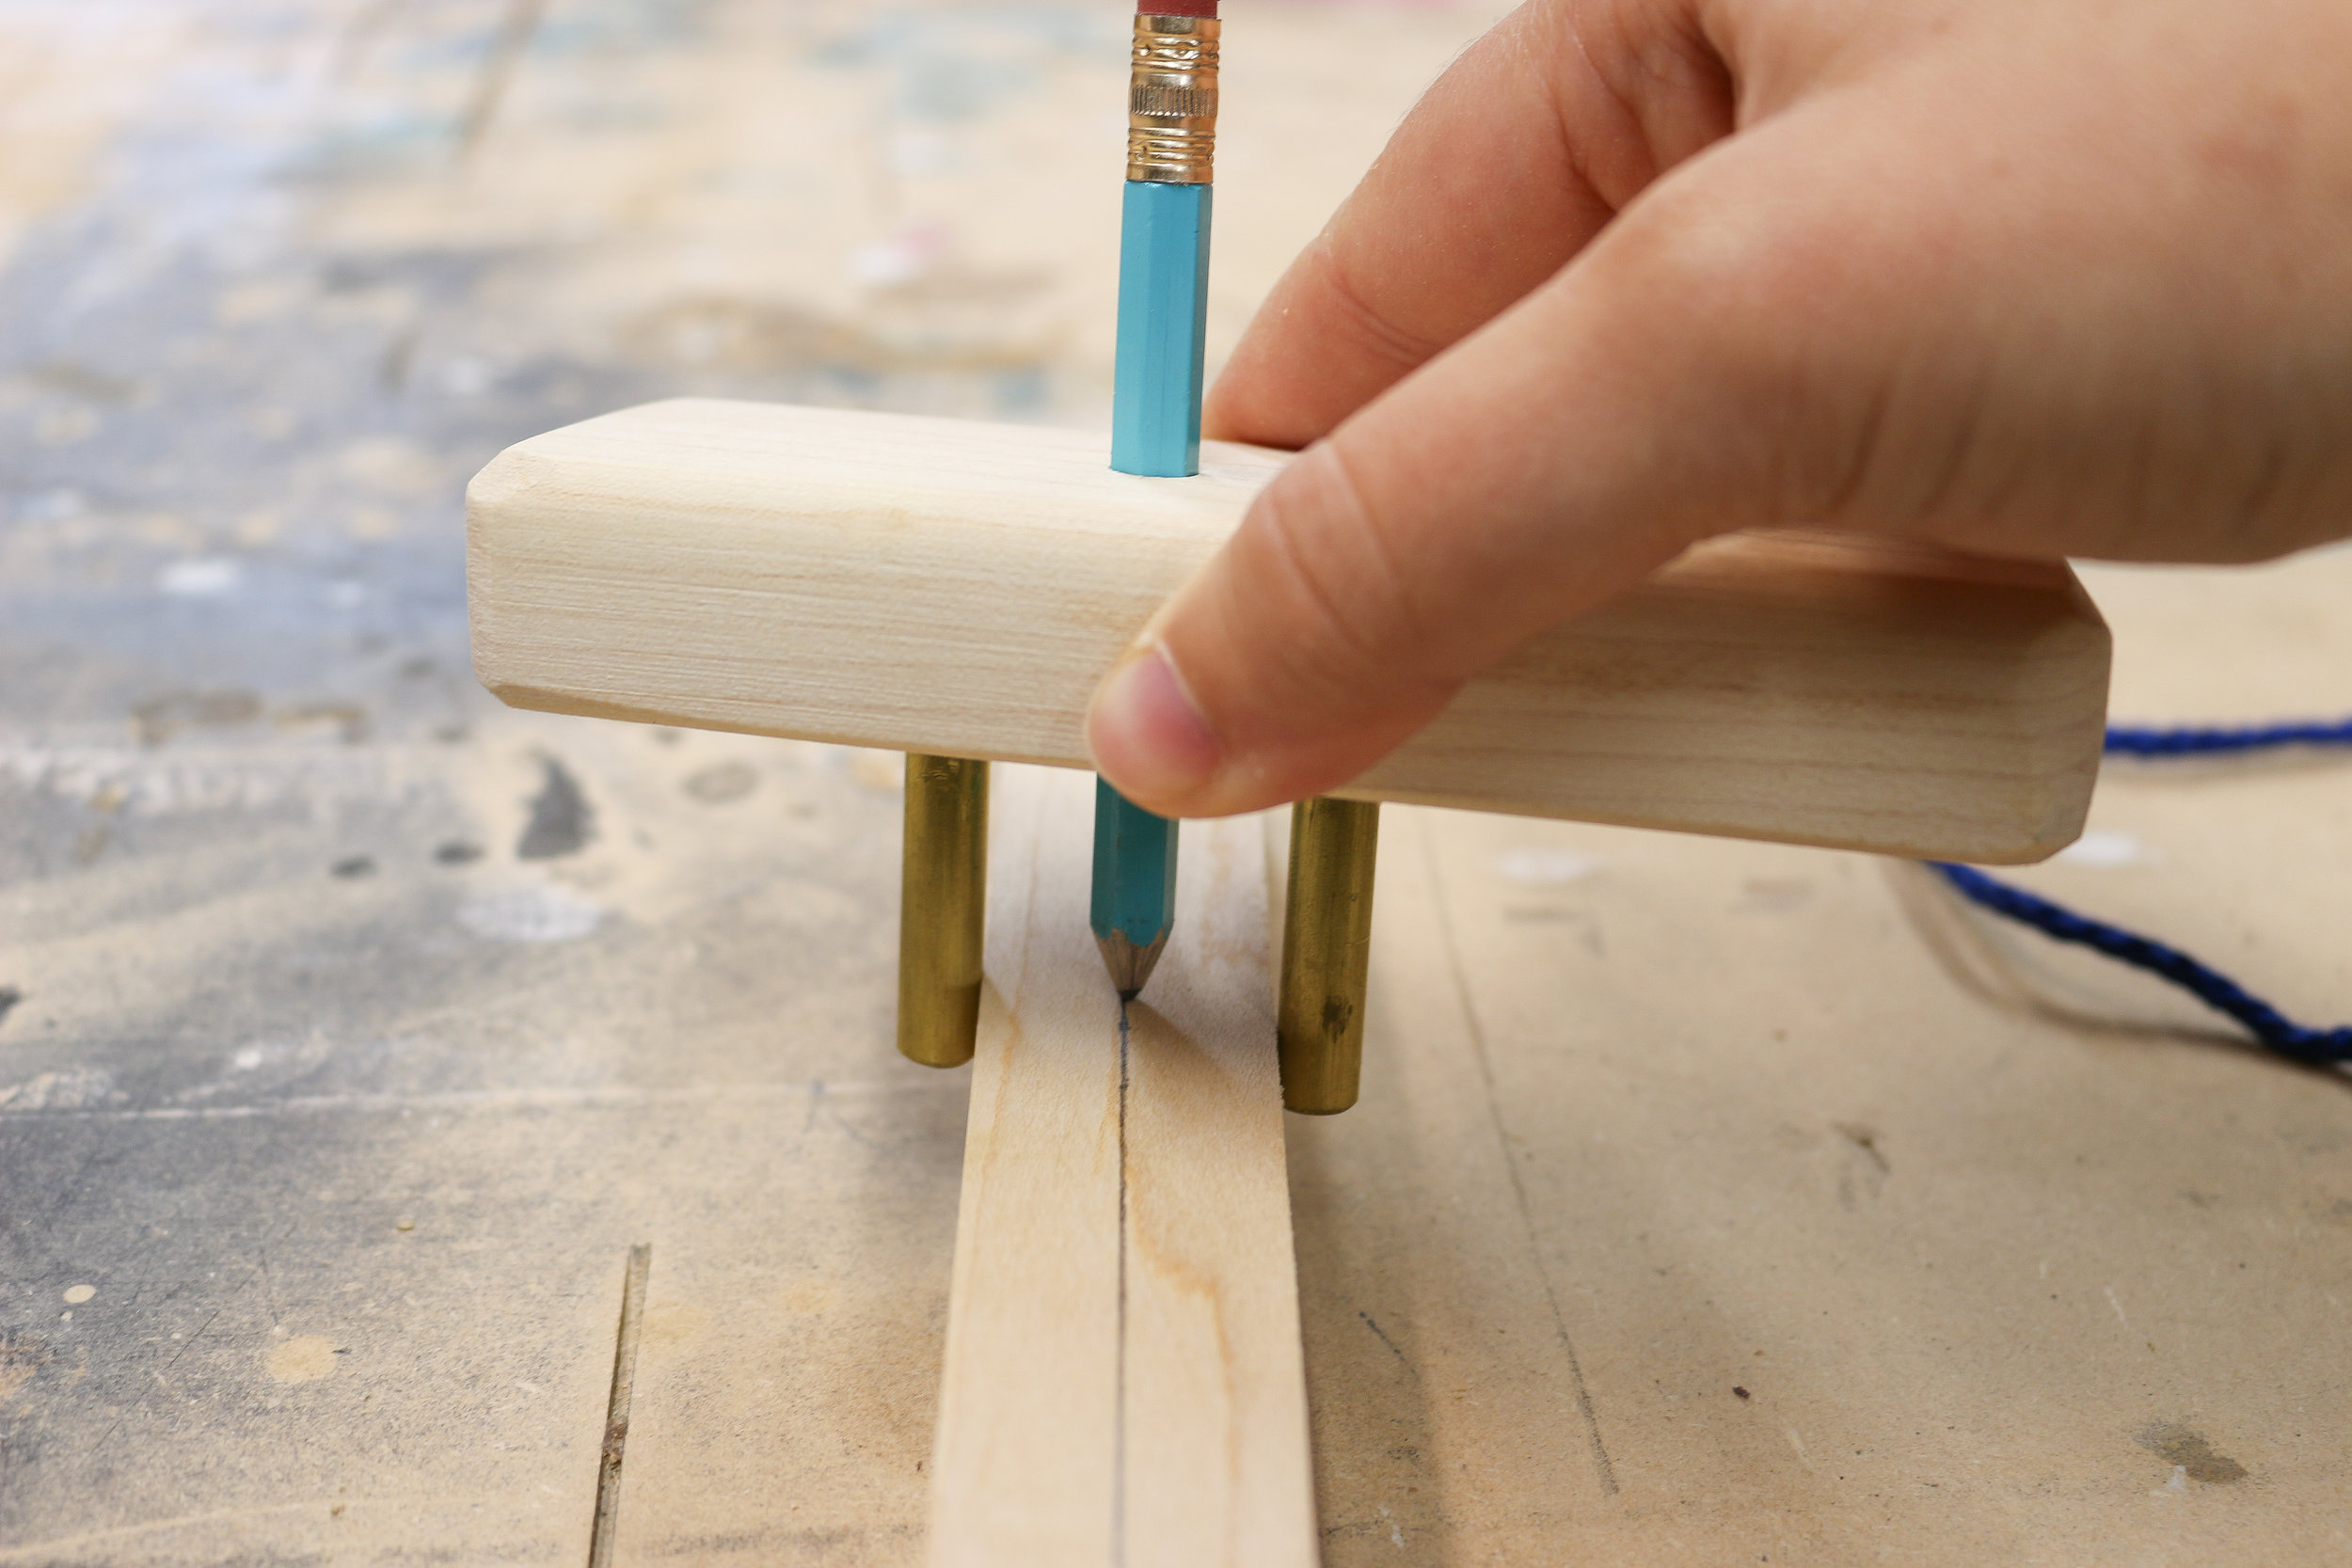 Hand Tool Sharpening — 3x3 Custom